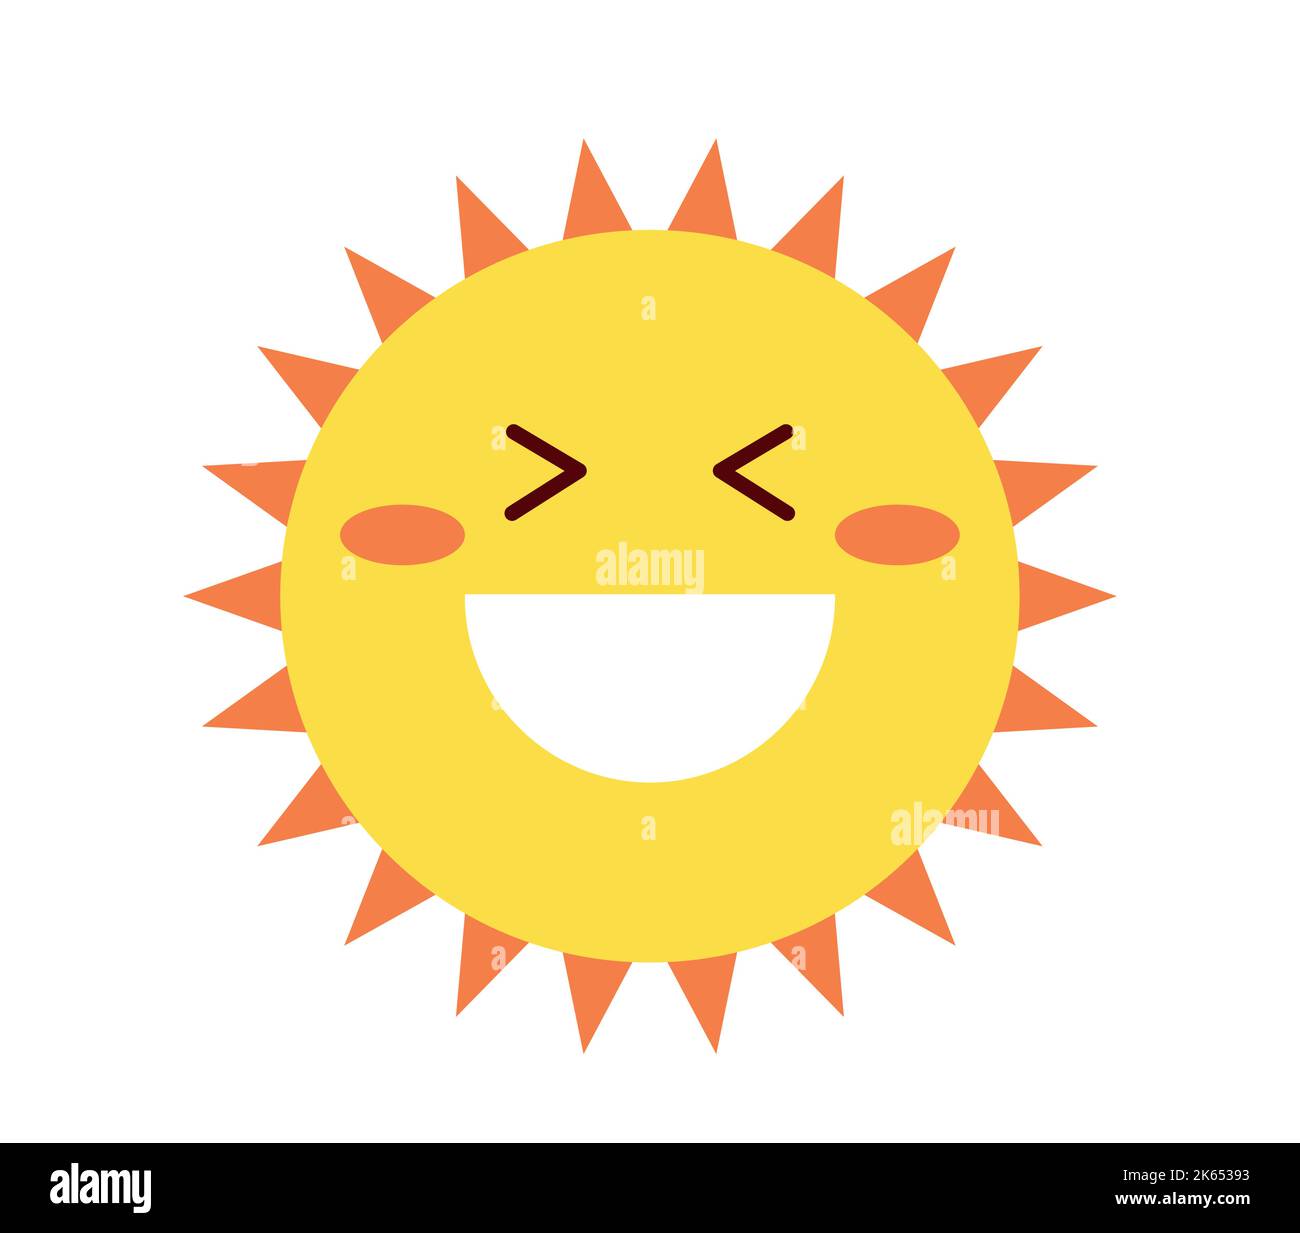 Happy sun icon Stock Vector Image & Art - Alamy